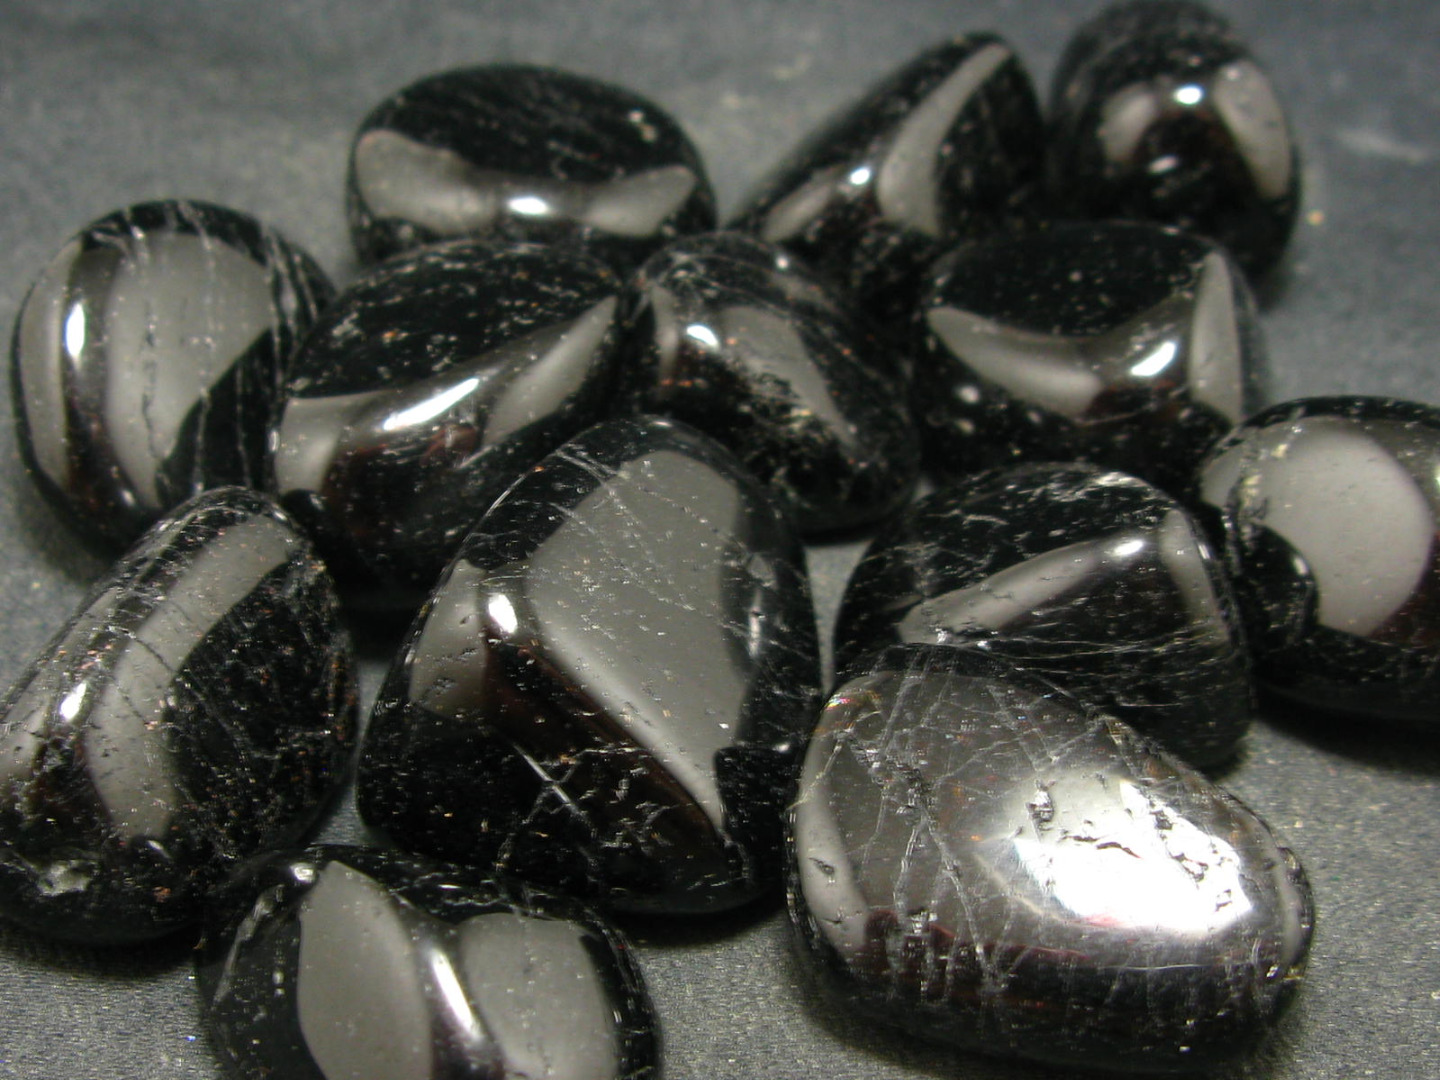 đá sapphire đen cho người sinh năm 1983